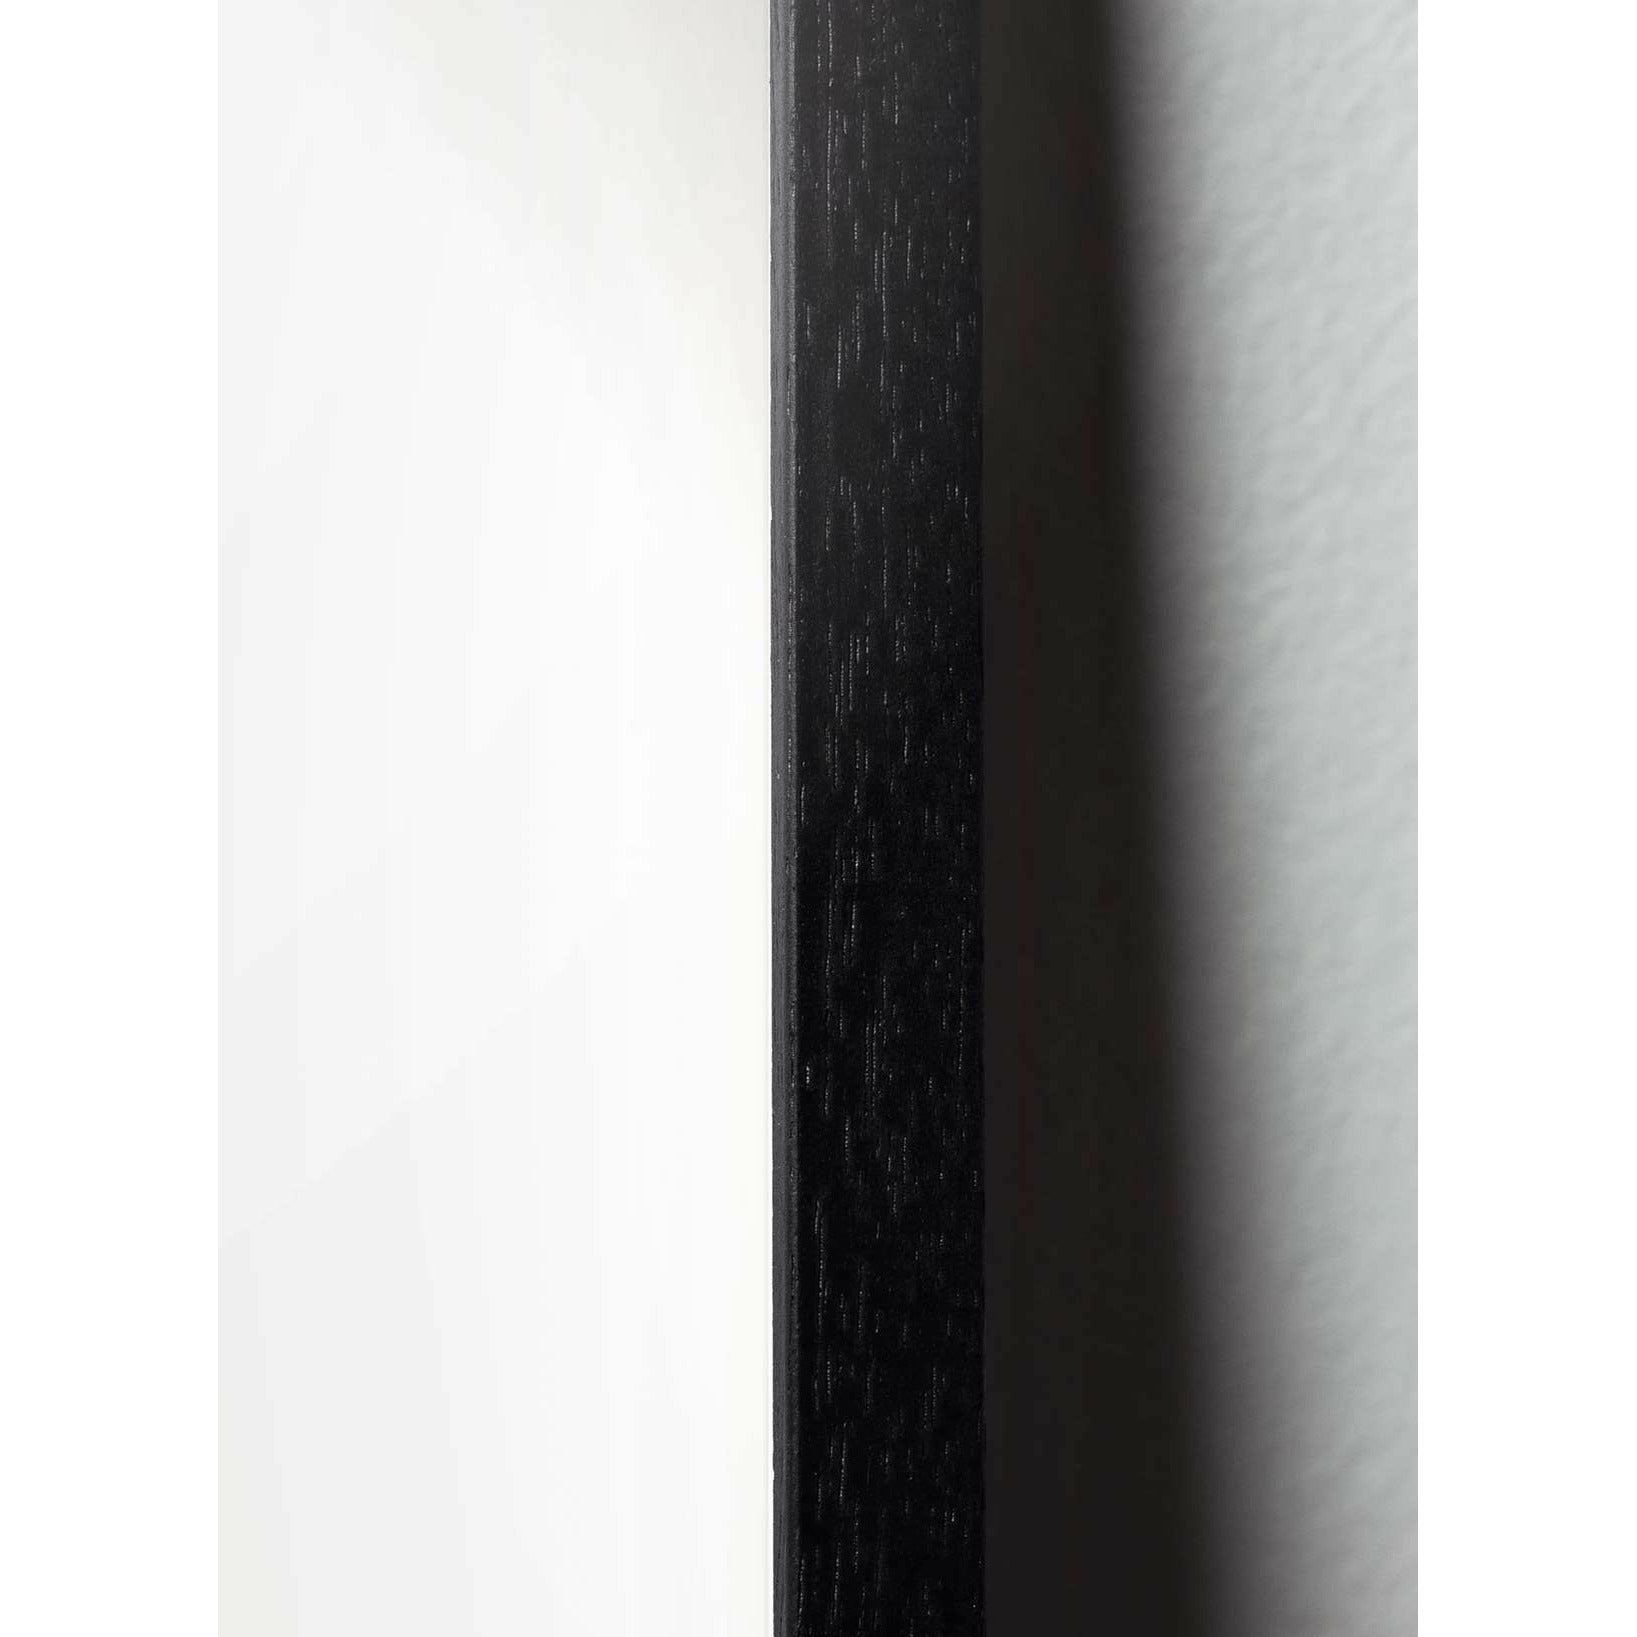 Pomysny plakat Teddy Bear, rama w czarnym lakierowanym drewnie 70x100 cm, tło w kolorze piasku